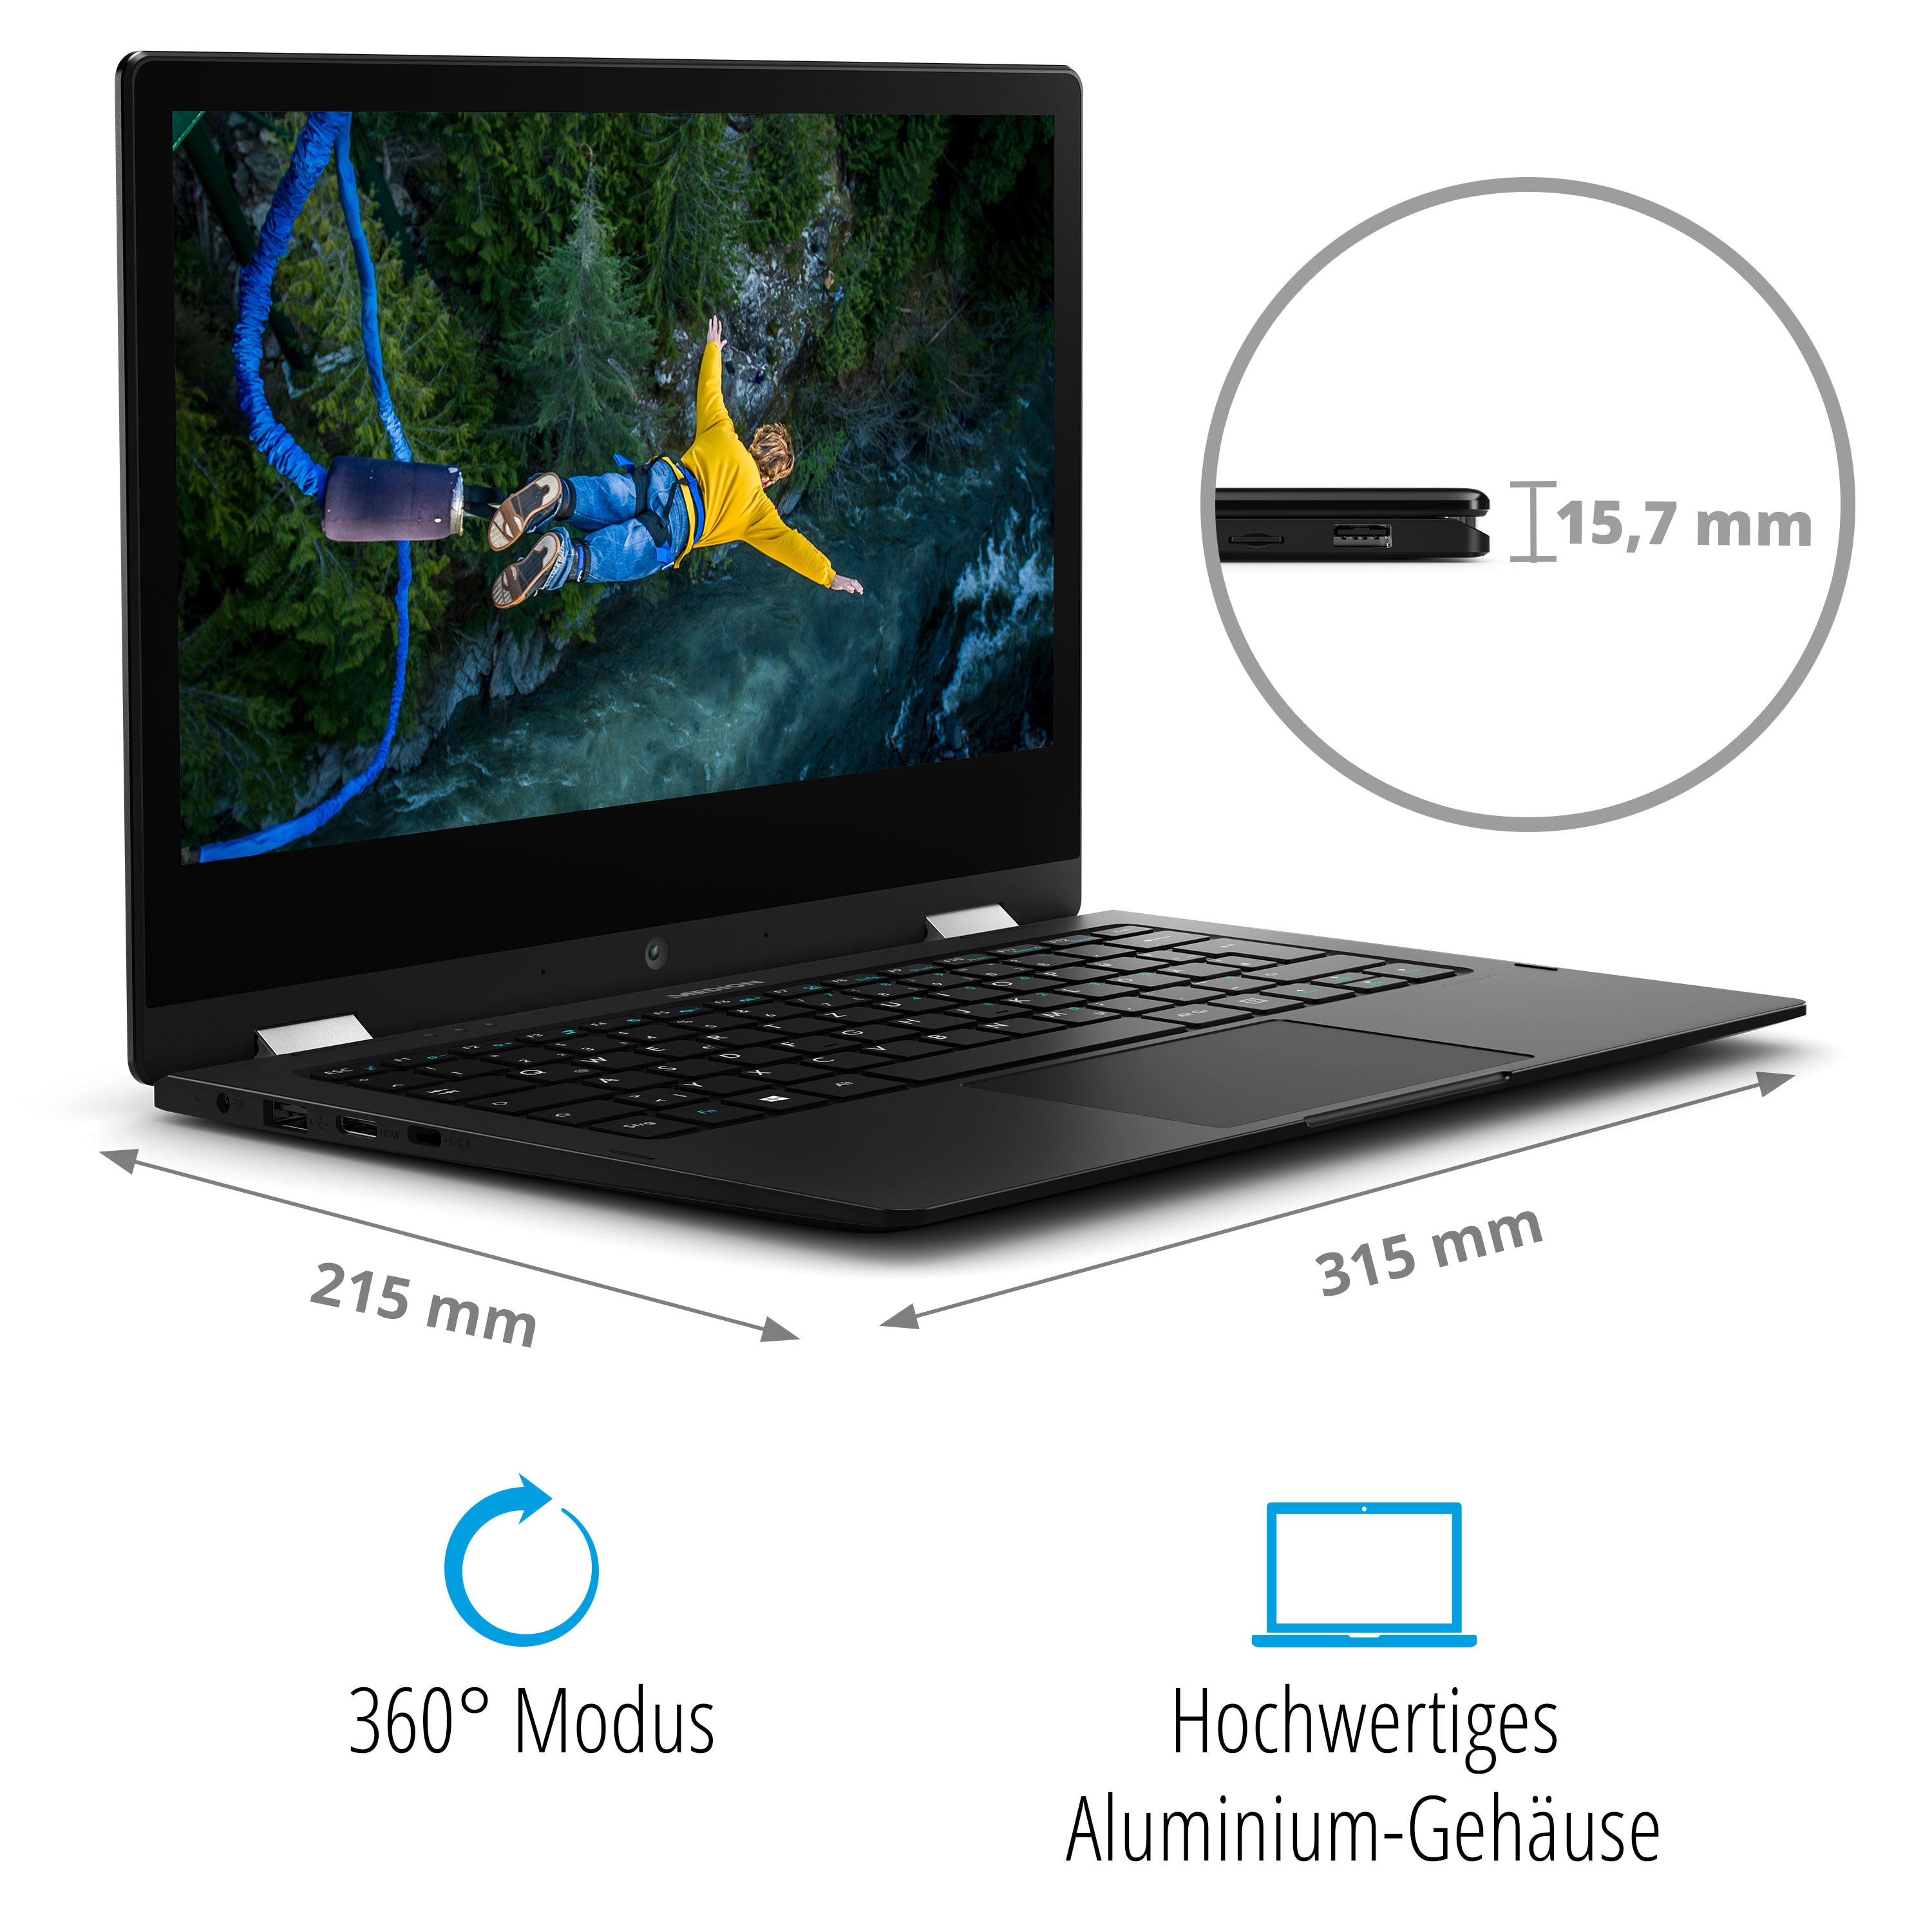 Medion Laptop Convertible Akoya E3221 Celeron N4020 4Gb 128Gb Ssd 13.3´  Táctil W11 Black